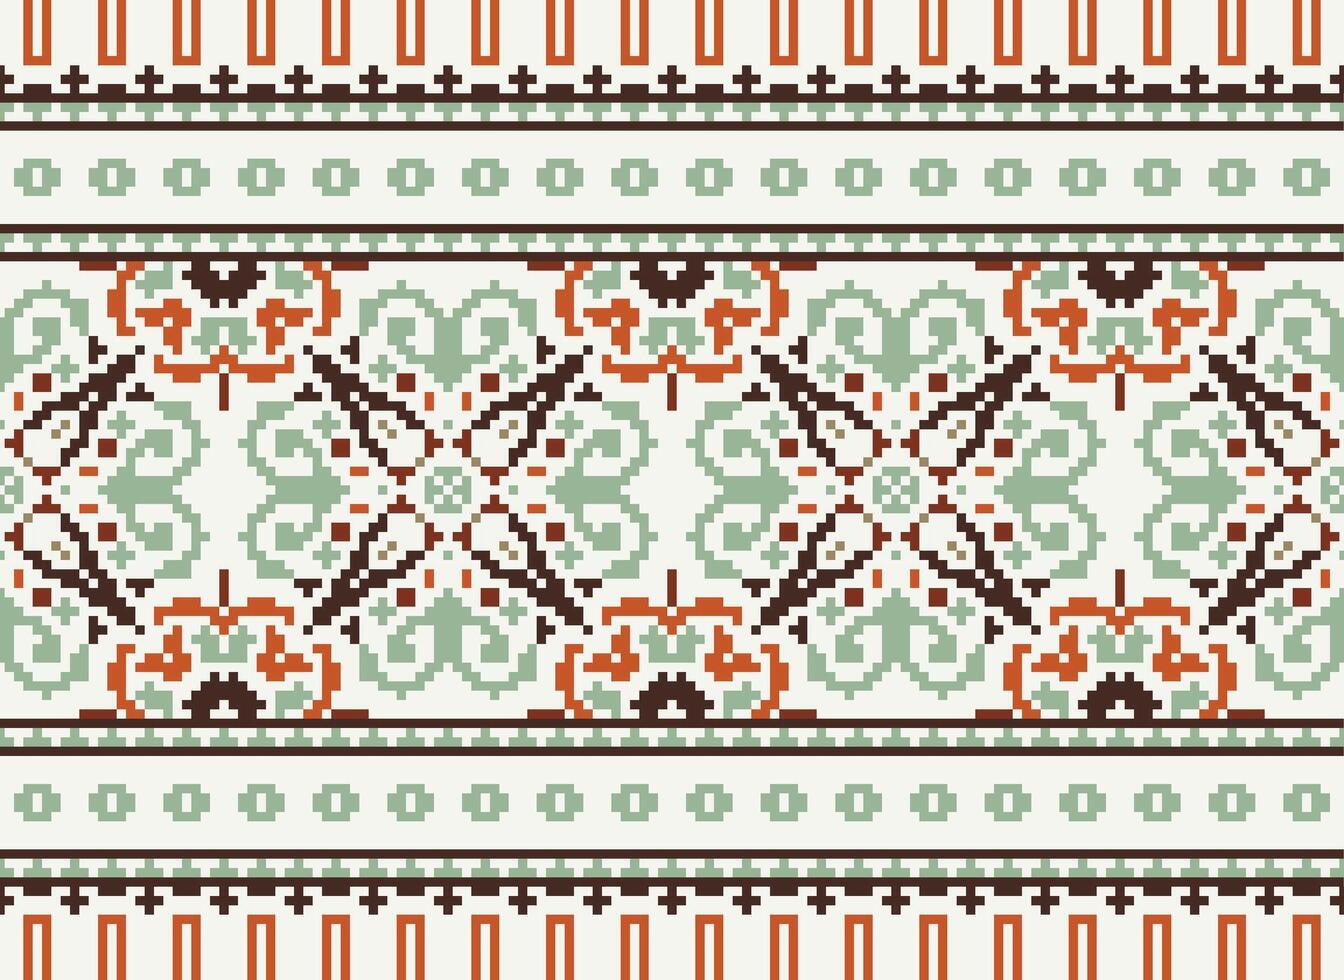 pixel Cruz ponto padronizar com floral projetos. tradicional Cruz ponto bordado. geométrico étnico padrão, bordado, têxtil ornamentação, tecido, mão costurado padrão, pixel arte. vetor